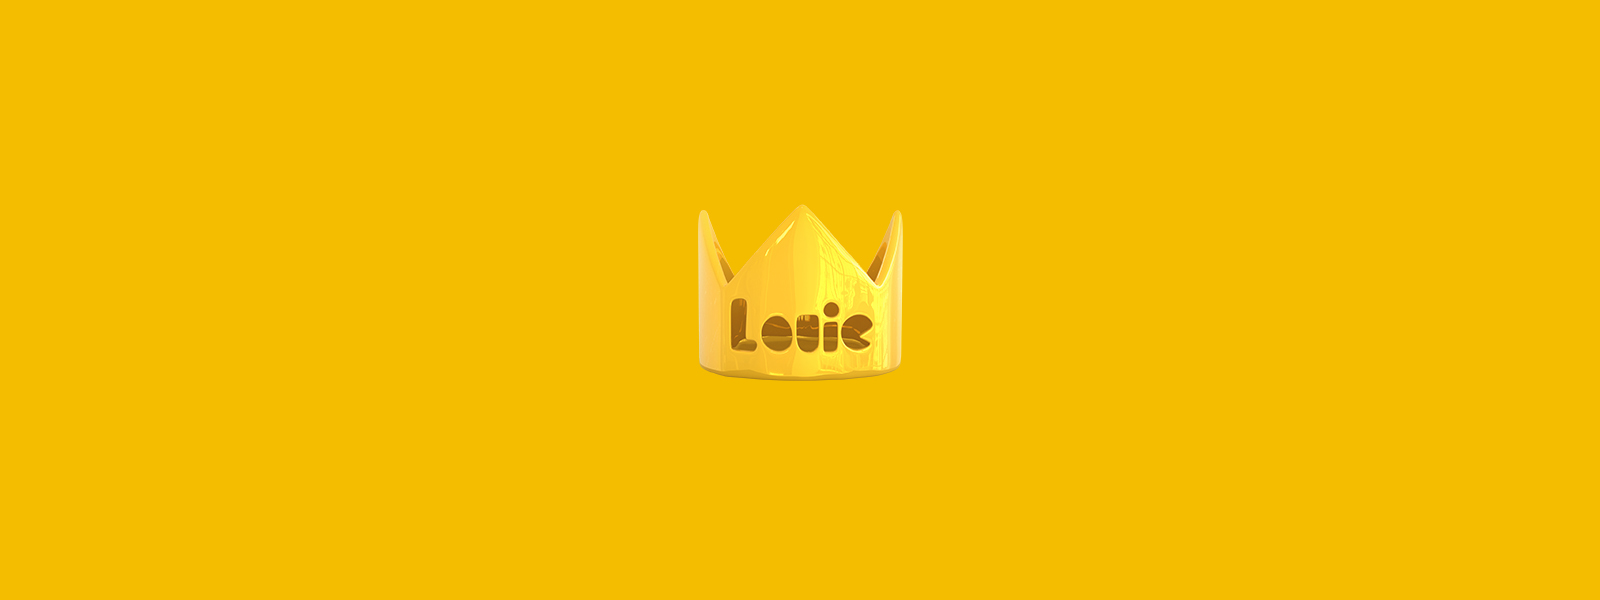 Louie, the Little Royals mascots crown